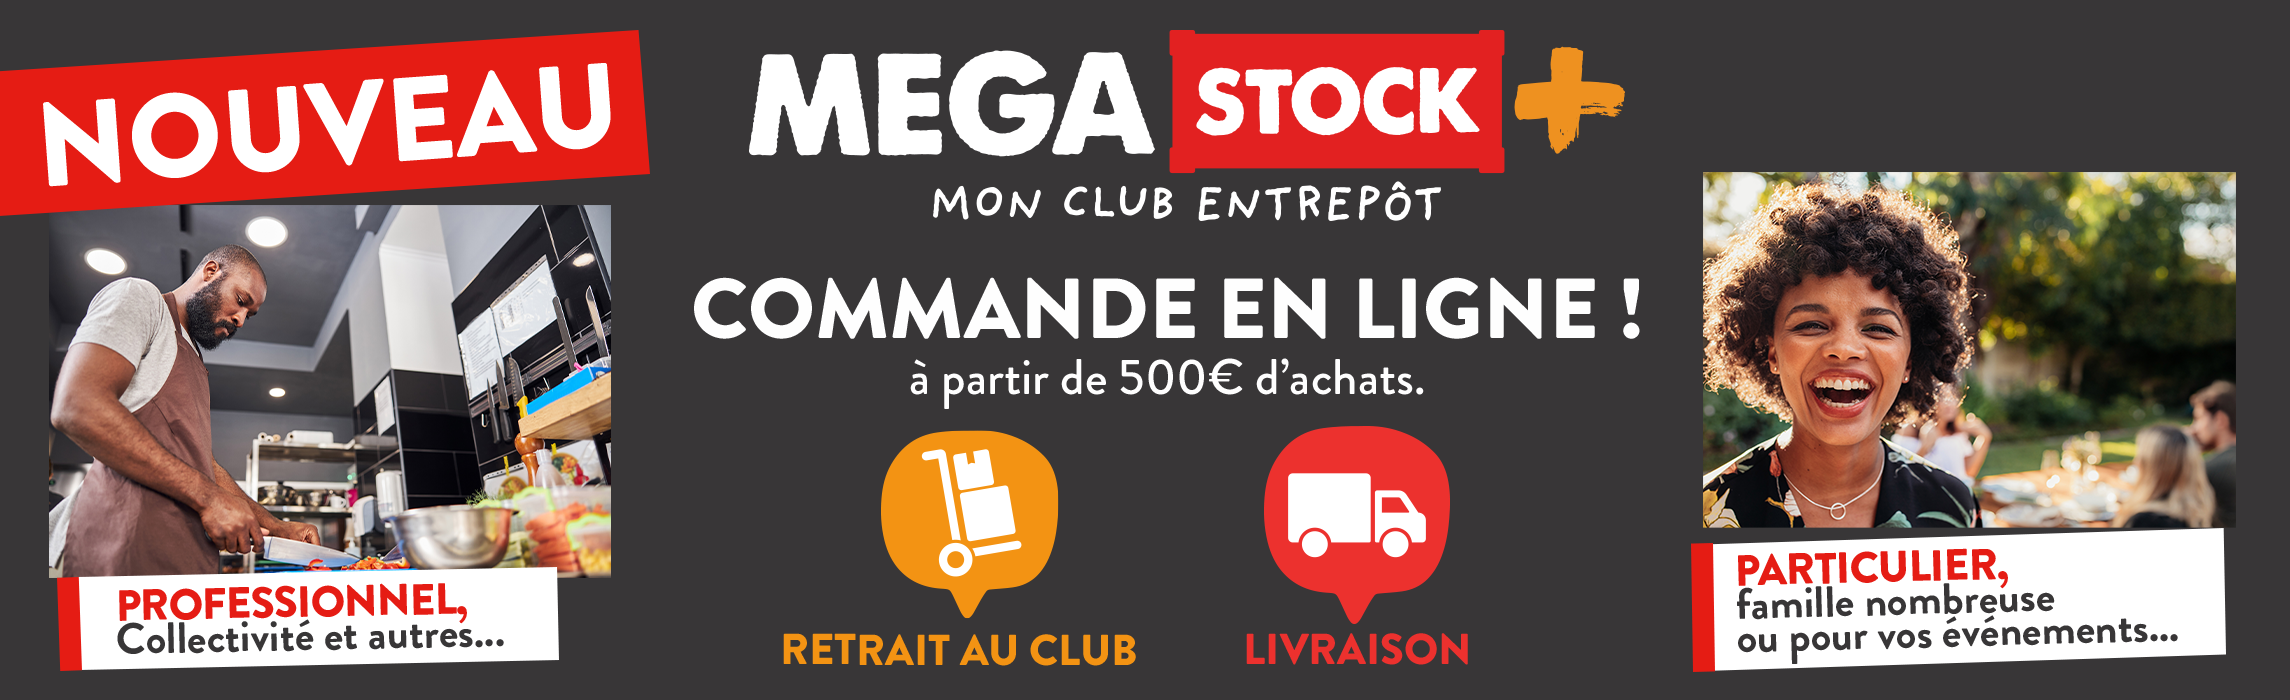 MEGA STOCK Plus Bientôt disponible